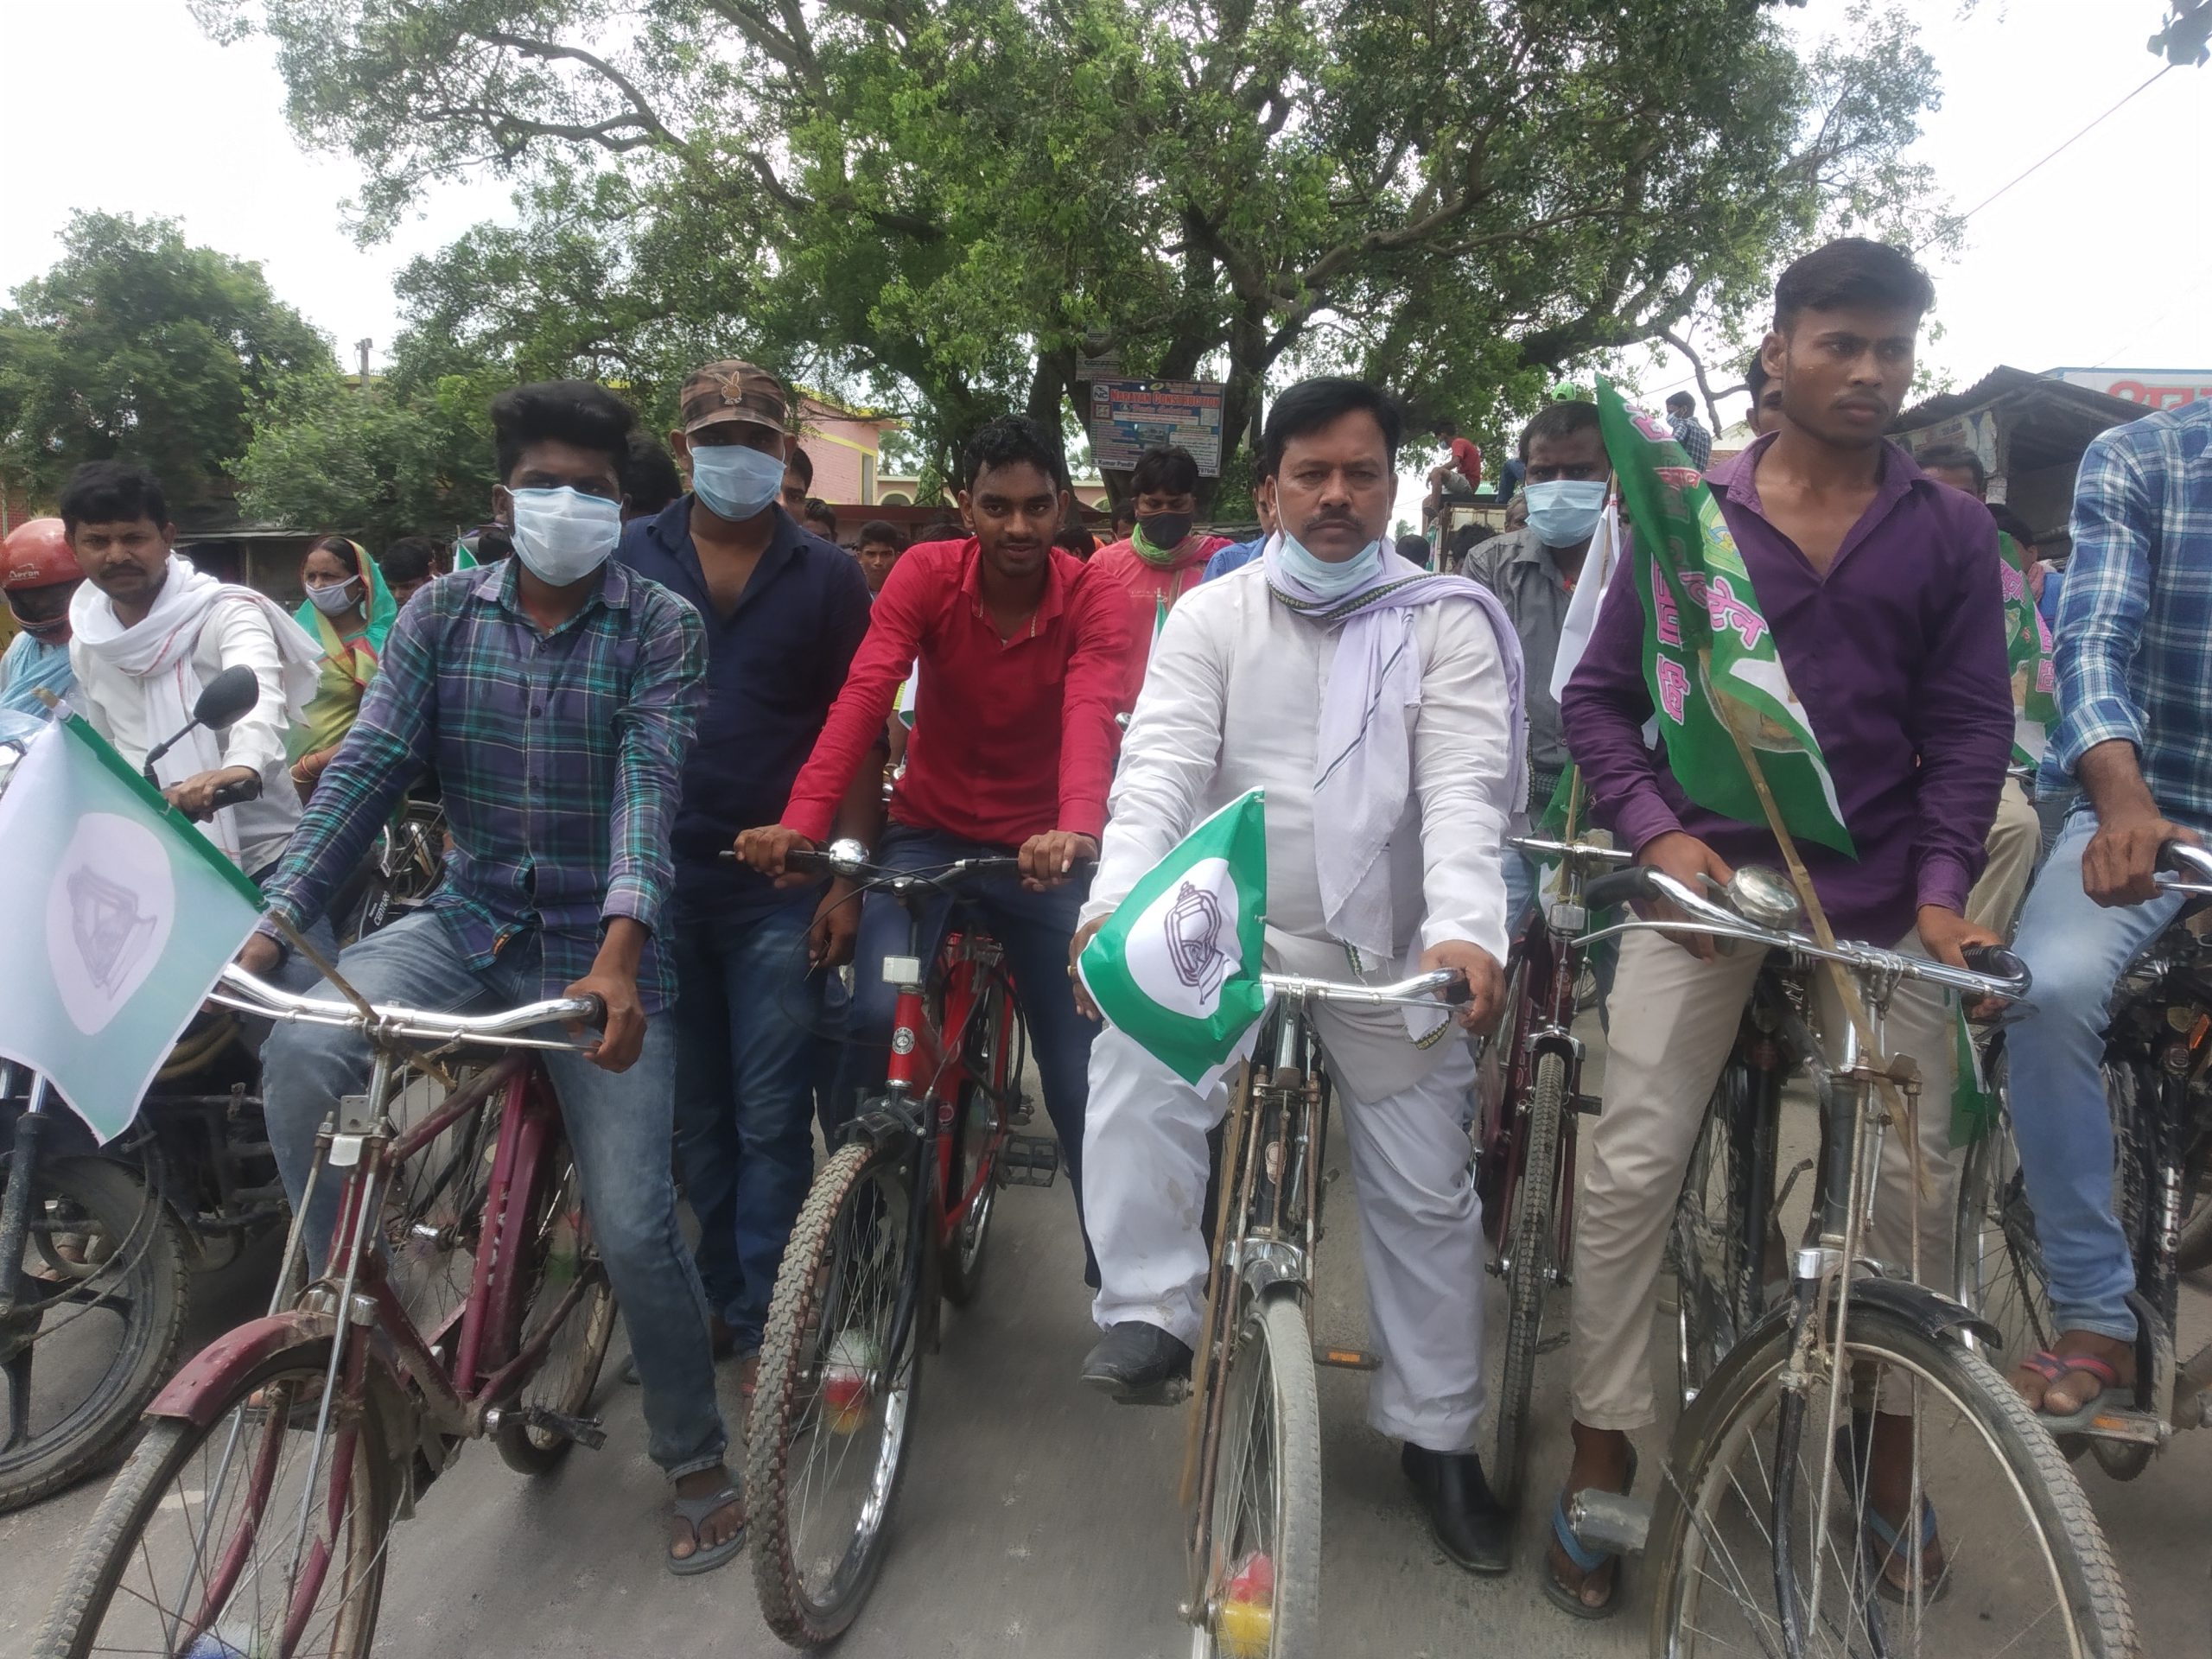 डीजल पेट्रोल के बढ़ते दामों को लेकर  राष्ट्रीय जनता दल के कार्यकर्ताओं ने निकाली साइकिल रैली।